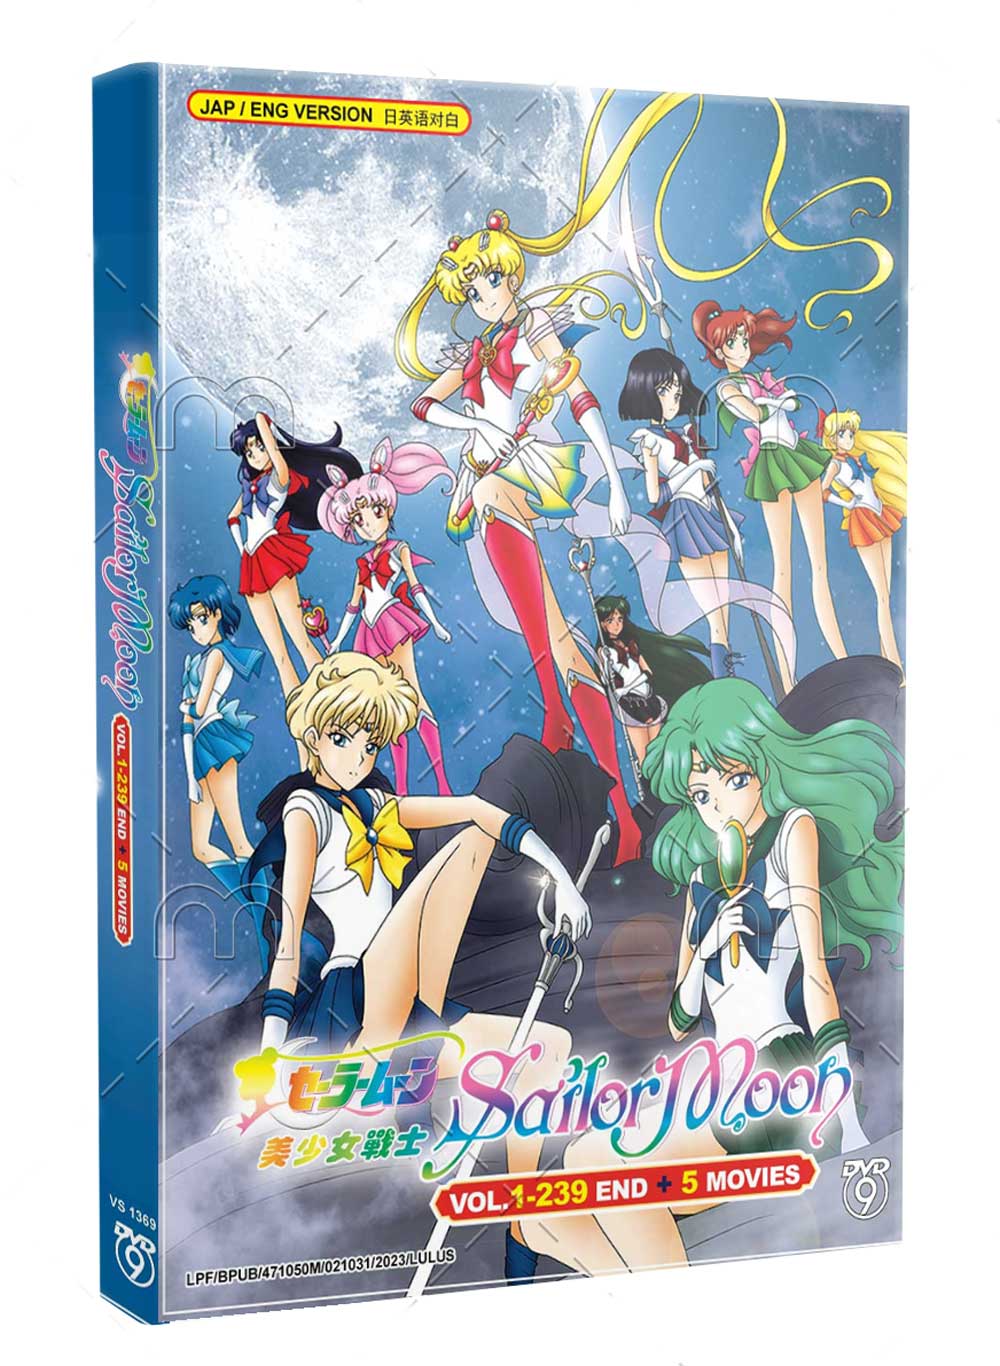 美少女戰士 Vol 1-239 + 5 Movies (DVD) () 動畫